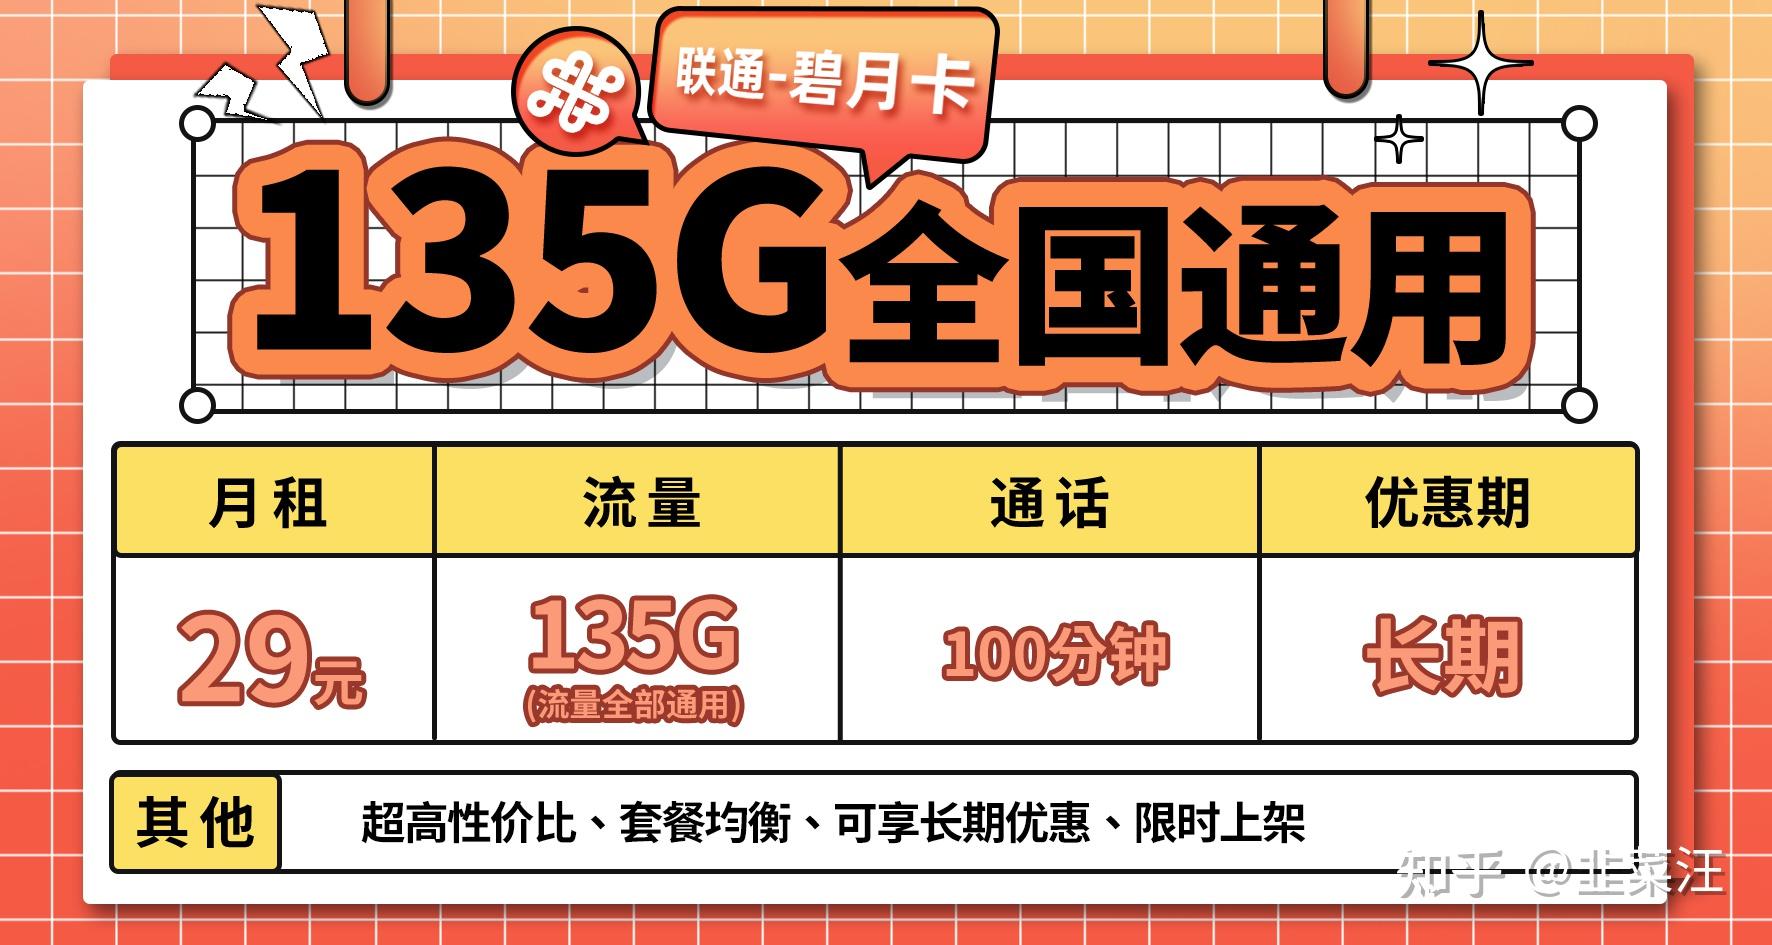 杭州 5G 手机价格变化趋势及对生活的影响深度解析